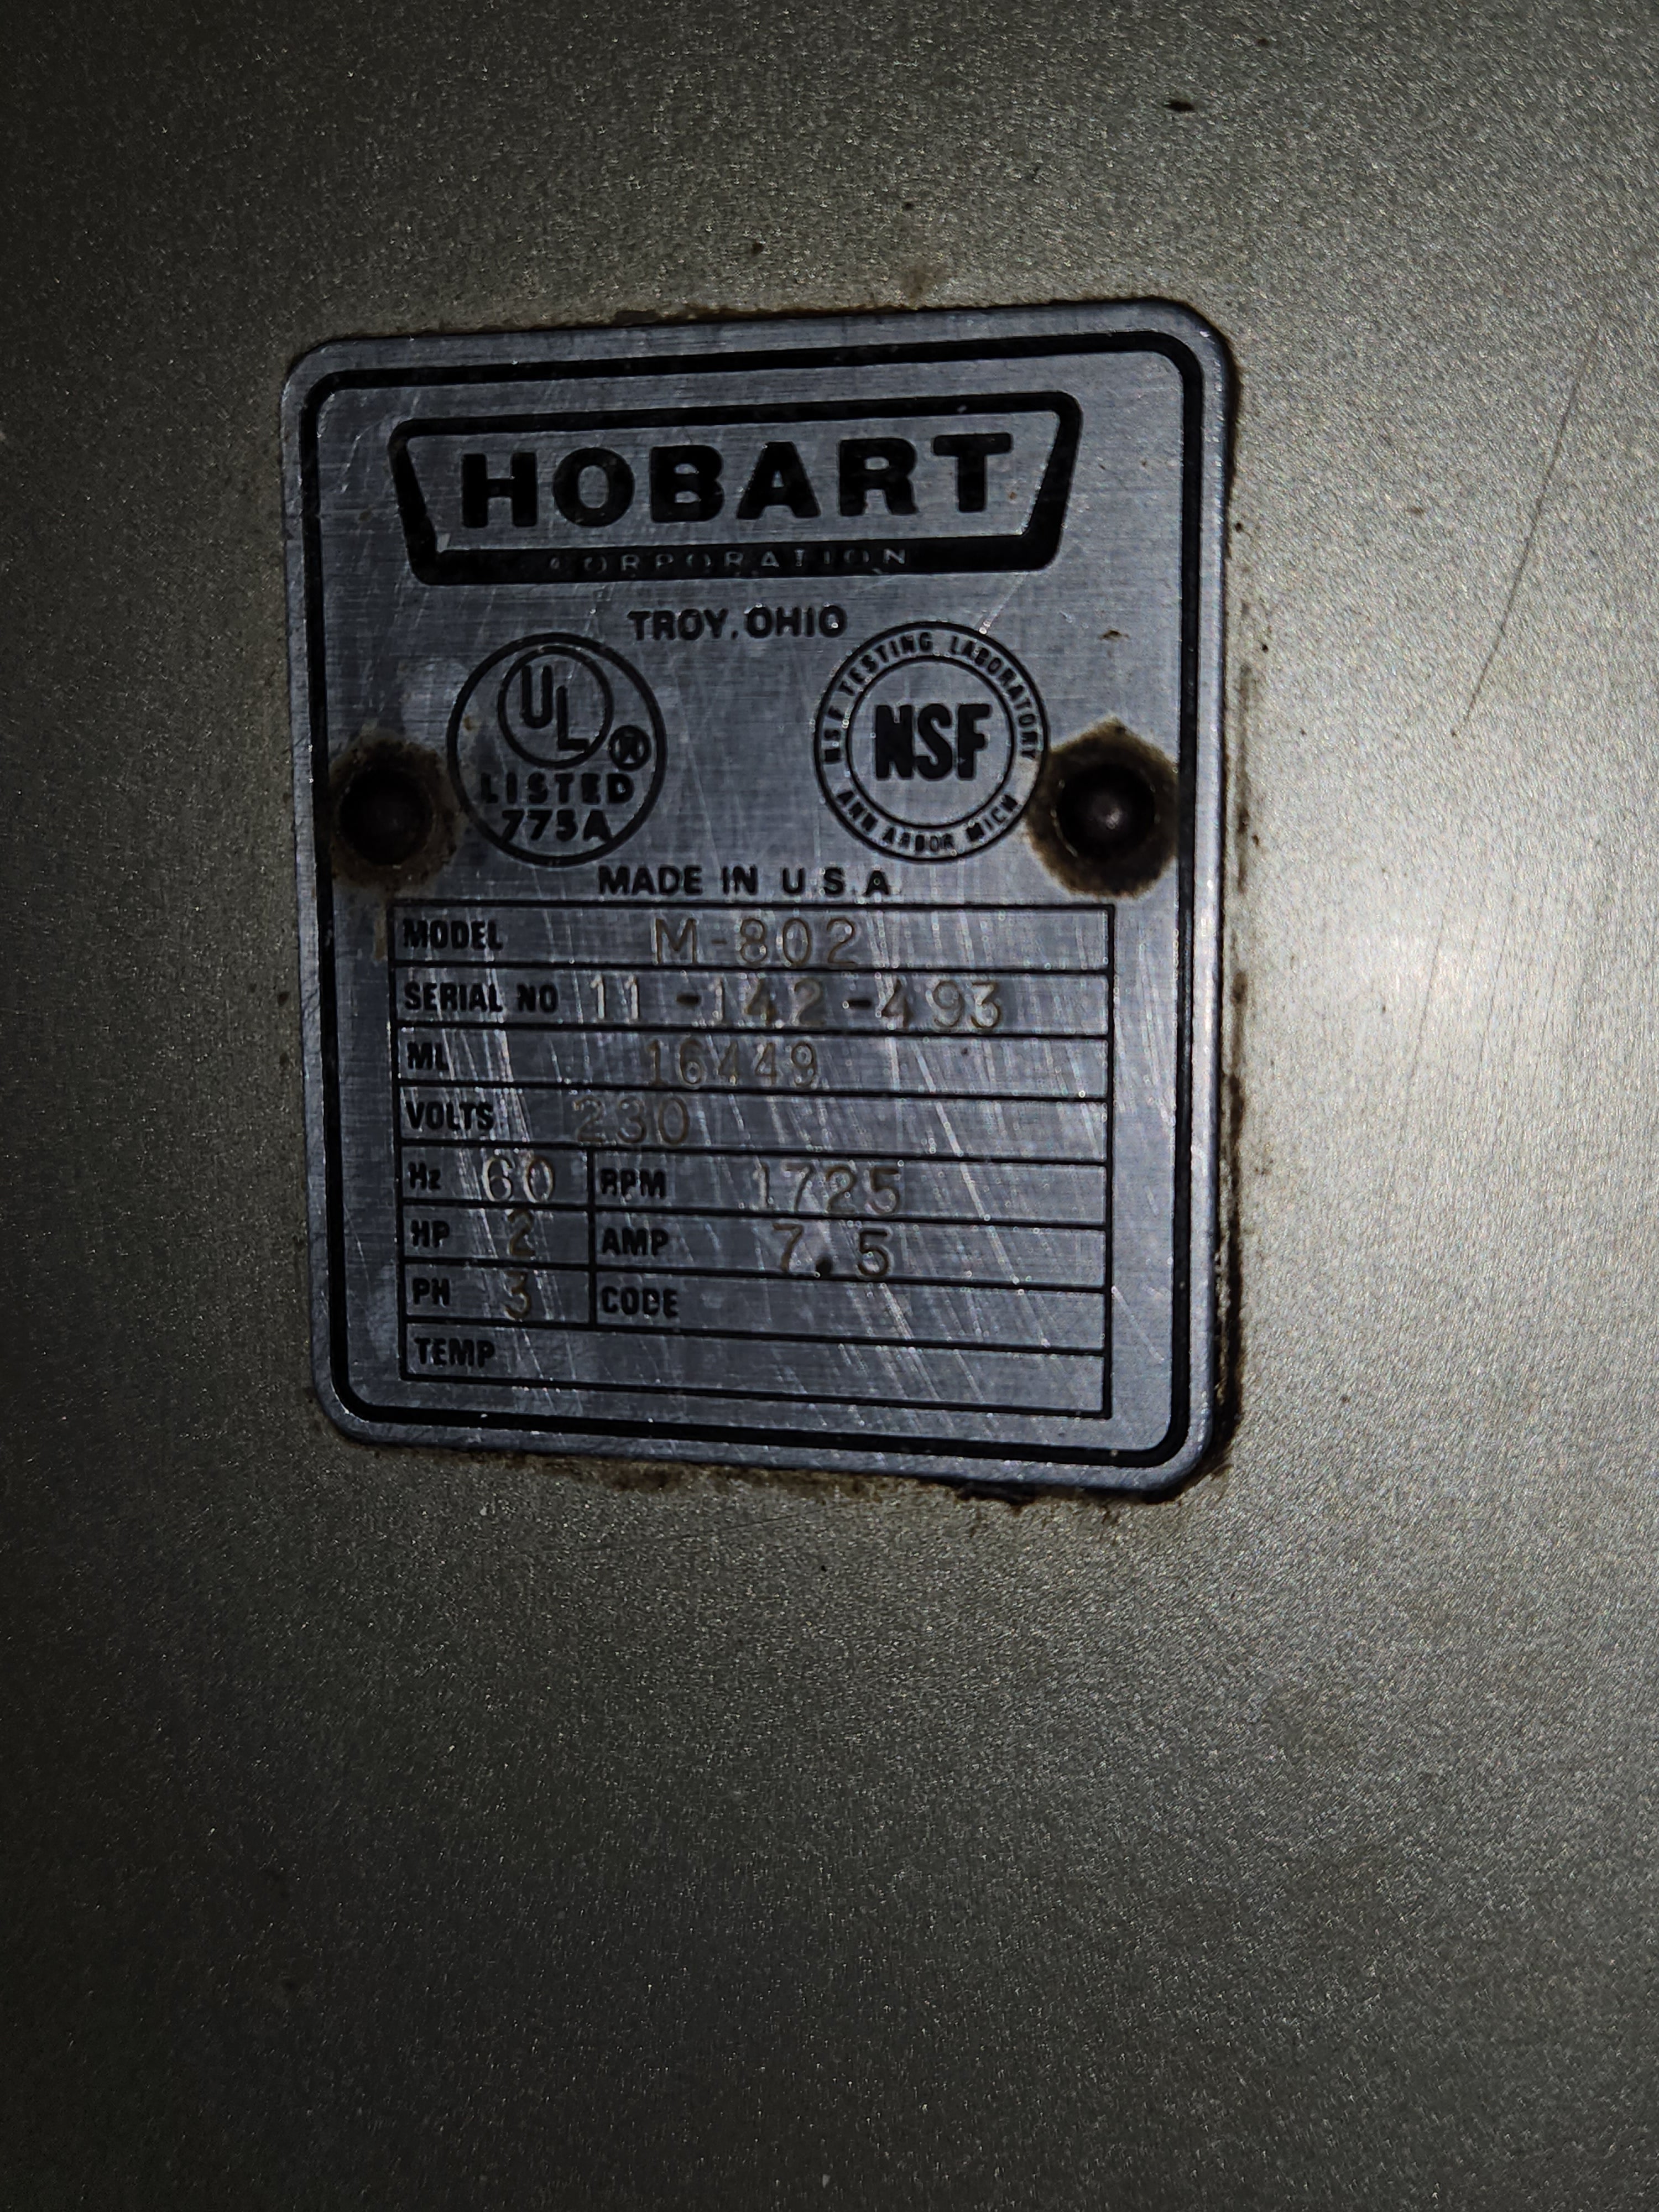 80QT Planetary Mixer | Hobart | Model # M-802 | 200 Volt